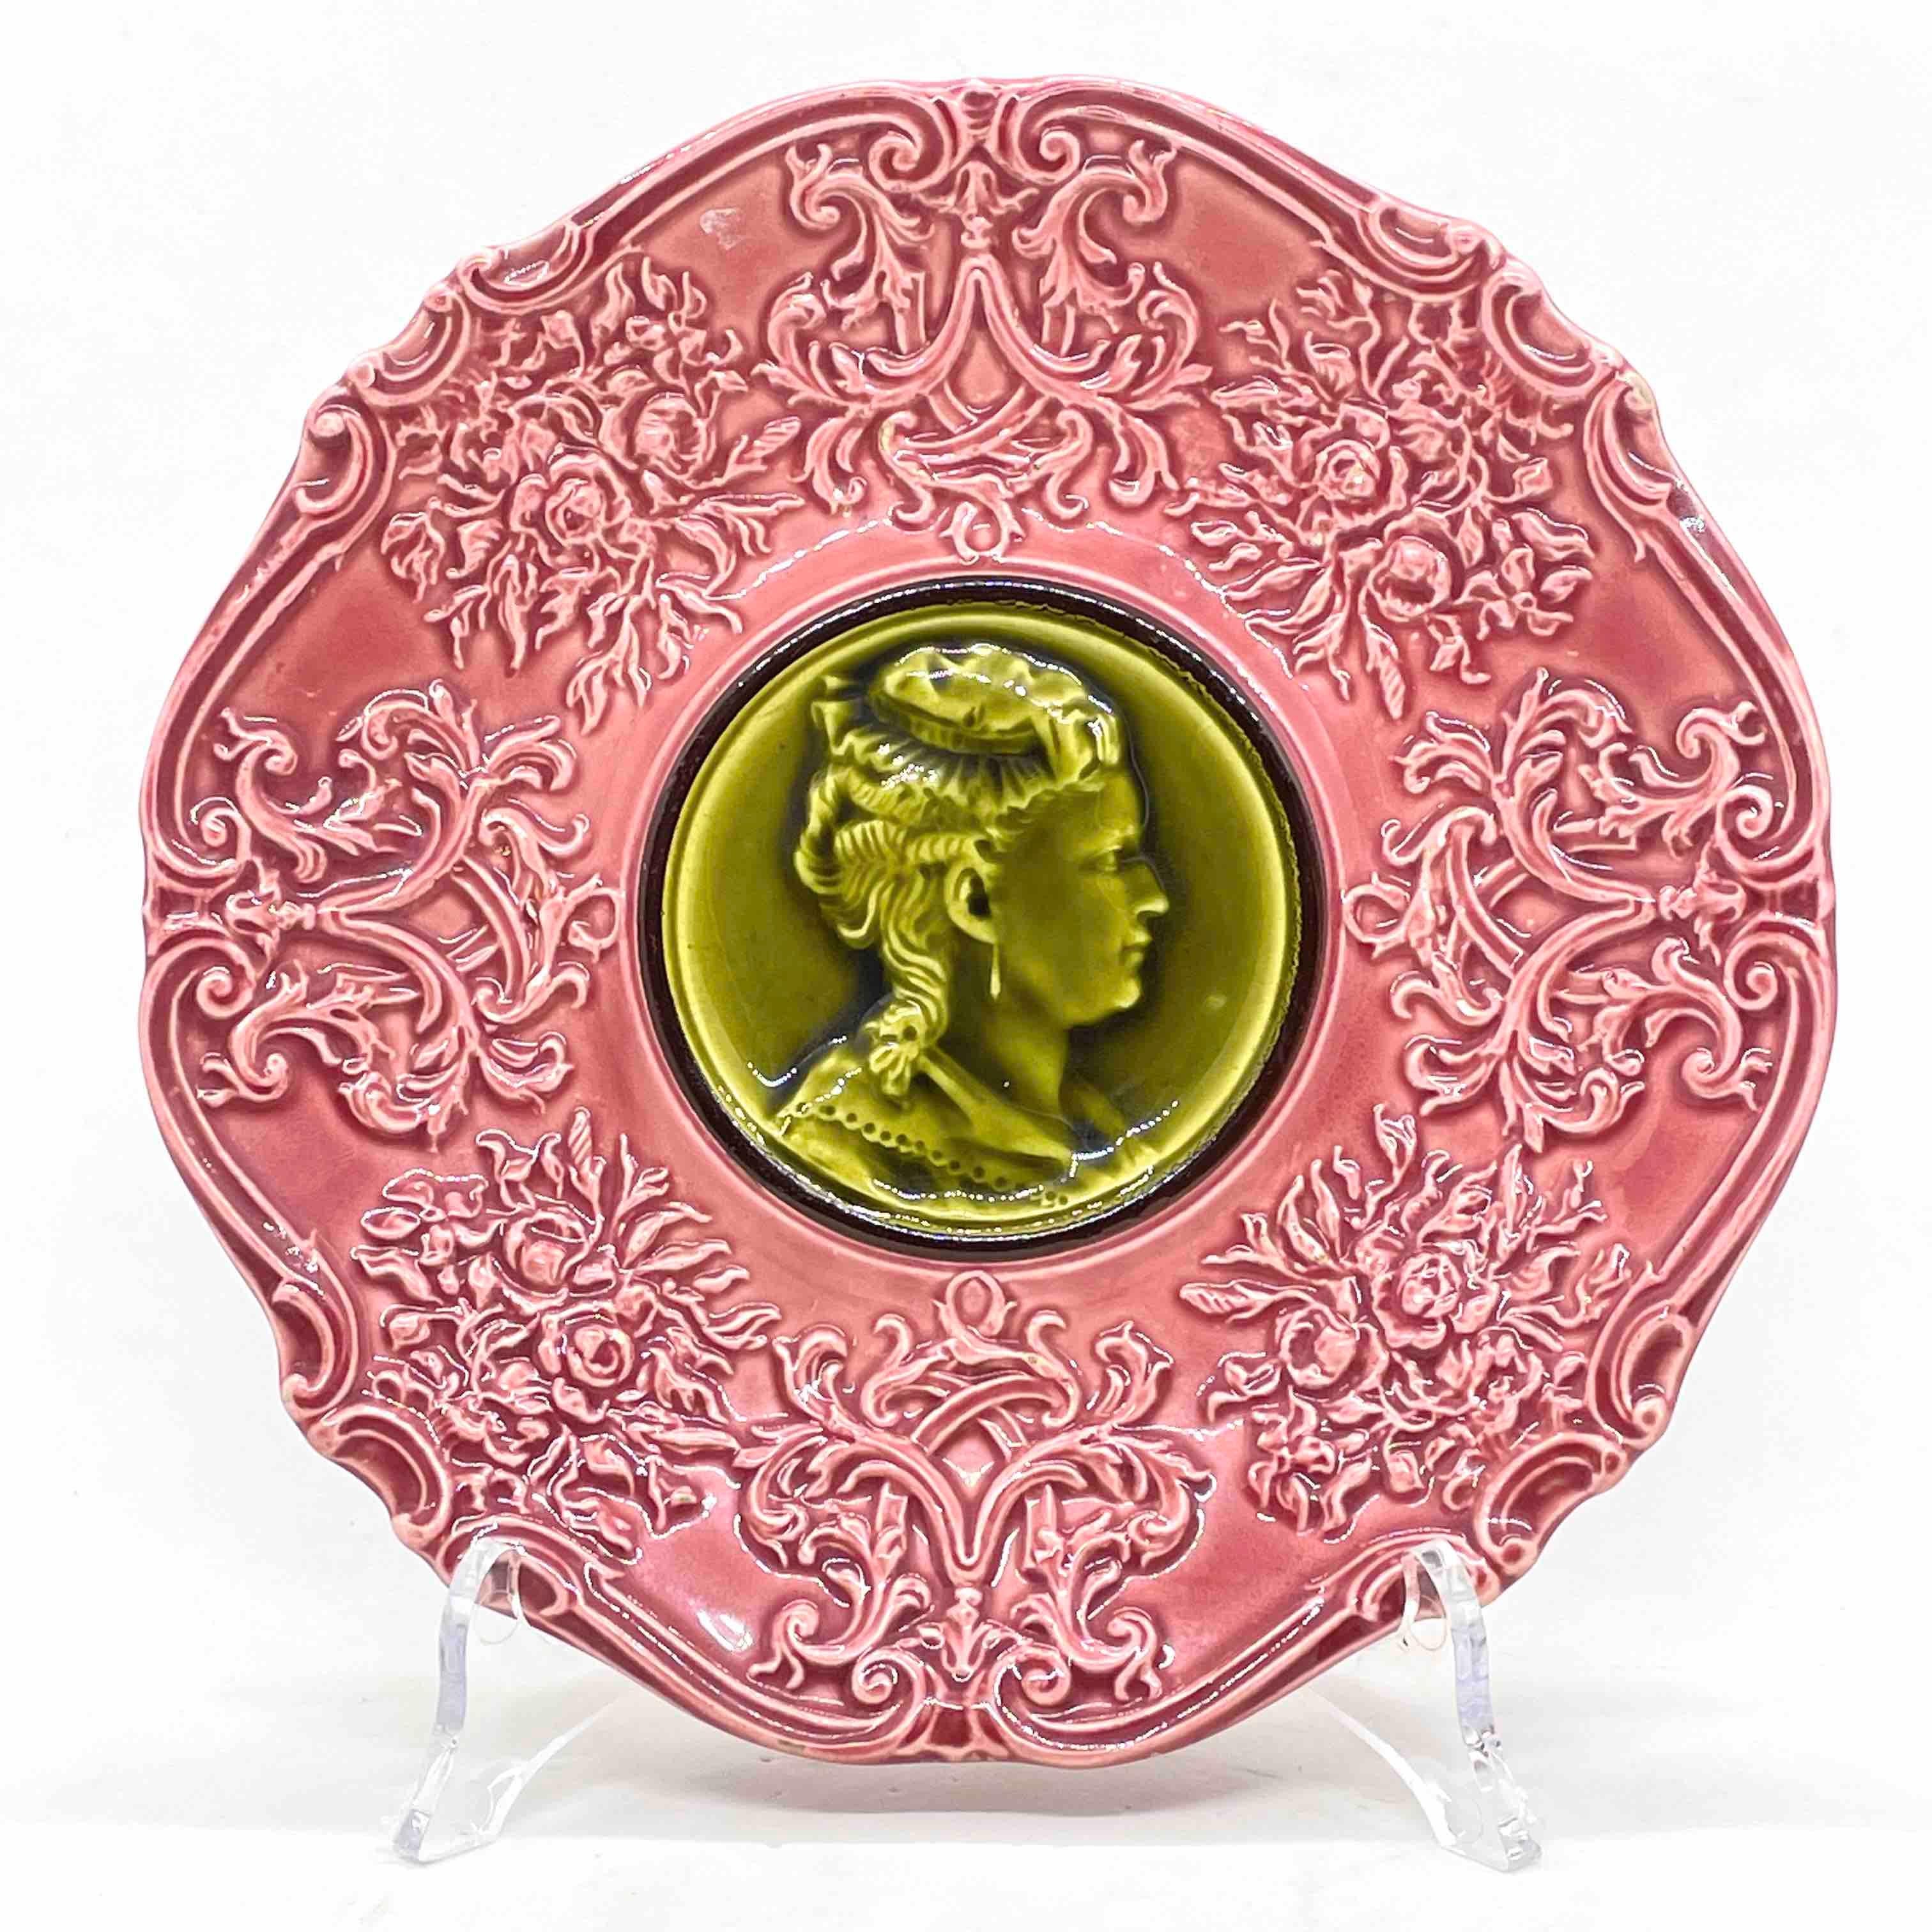 assiettes en majolique du 19e siècle de Villeroy & Boch dans une combinaison inhabituelle de couleurs vert olive et rose majolique avec un motif en relief sur le devant. Une belle addition à votre table ou simplement à exposer. Veuillez consulter